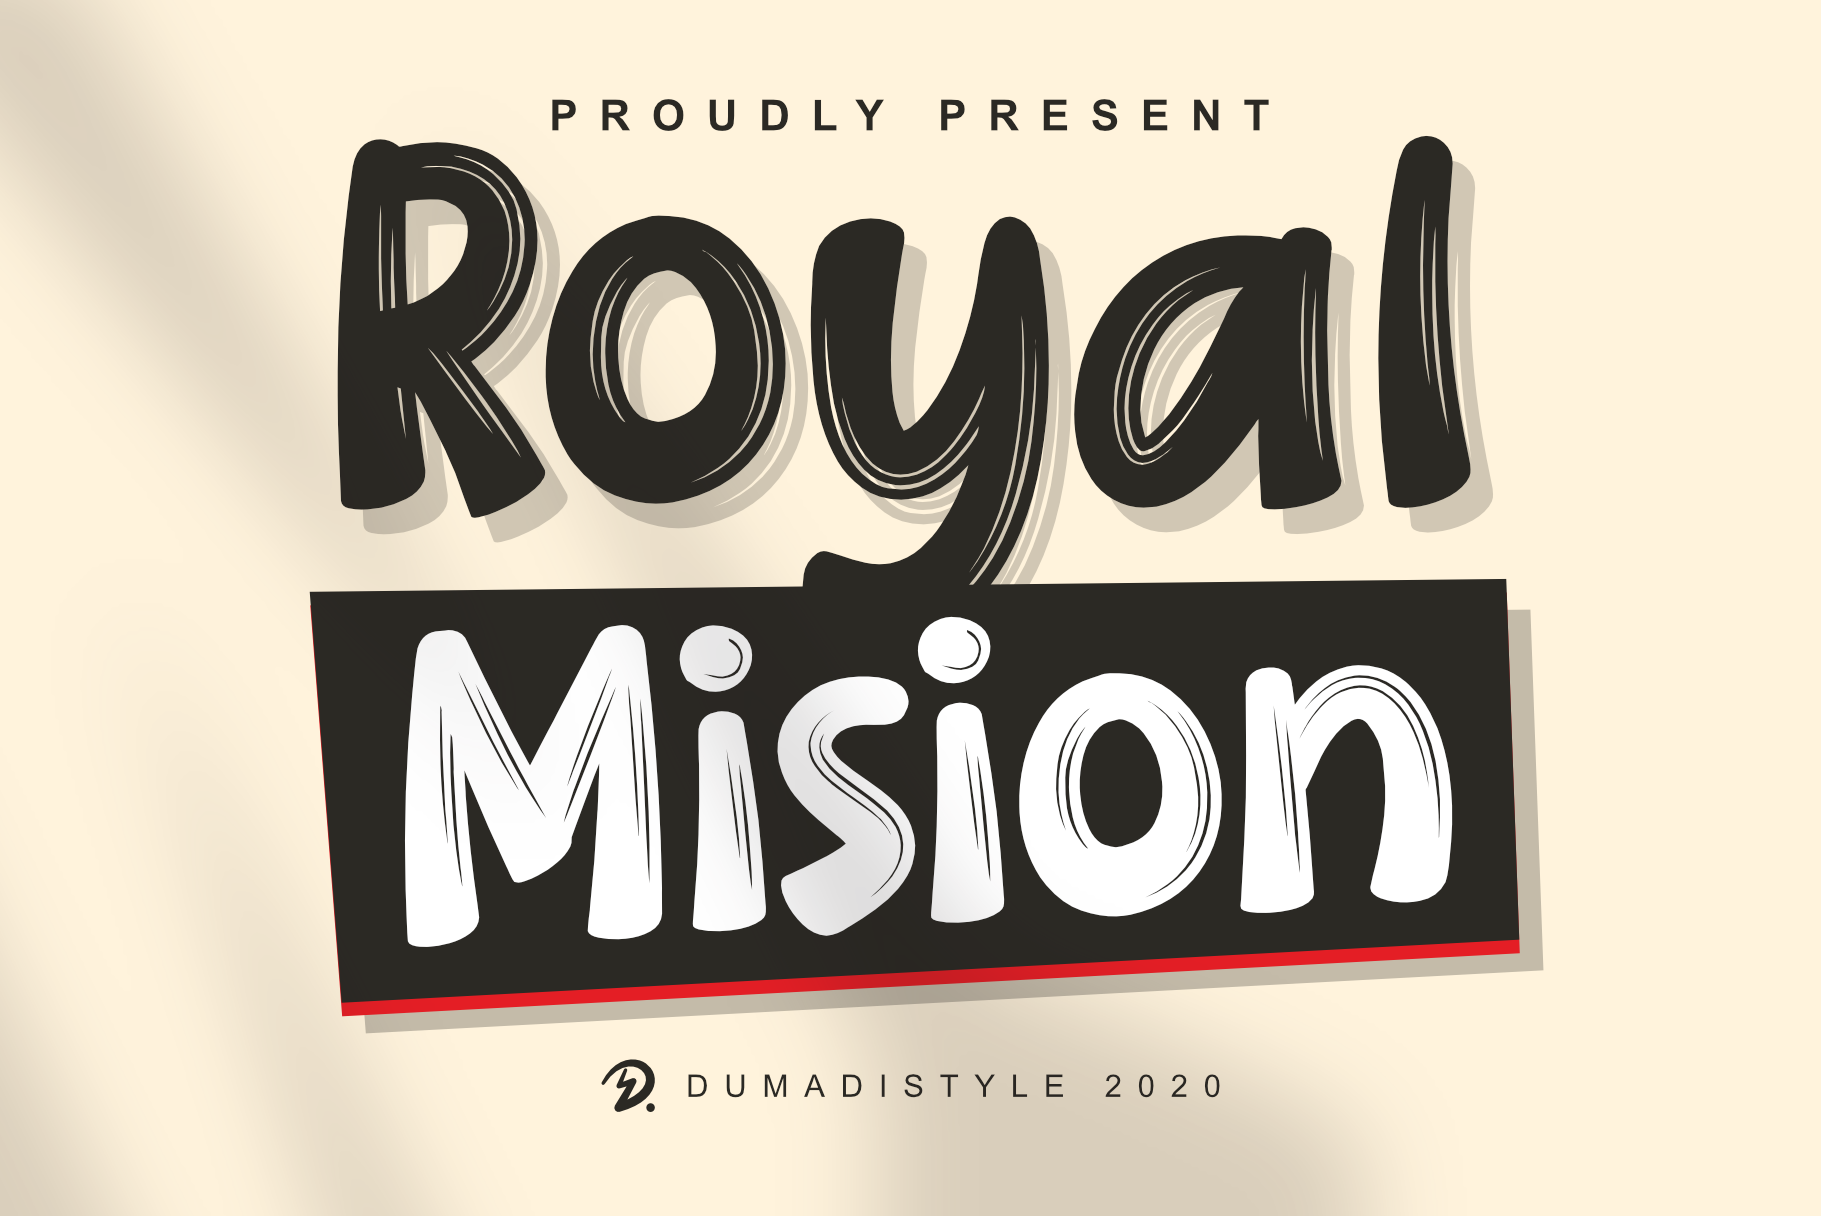 Royal Mision